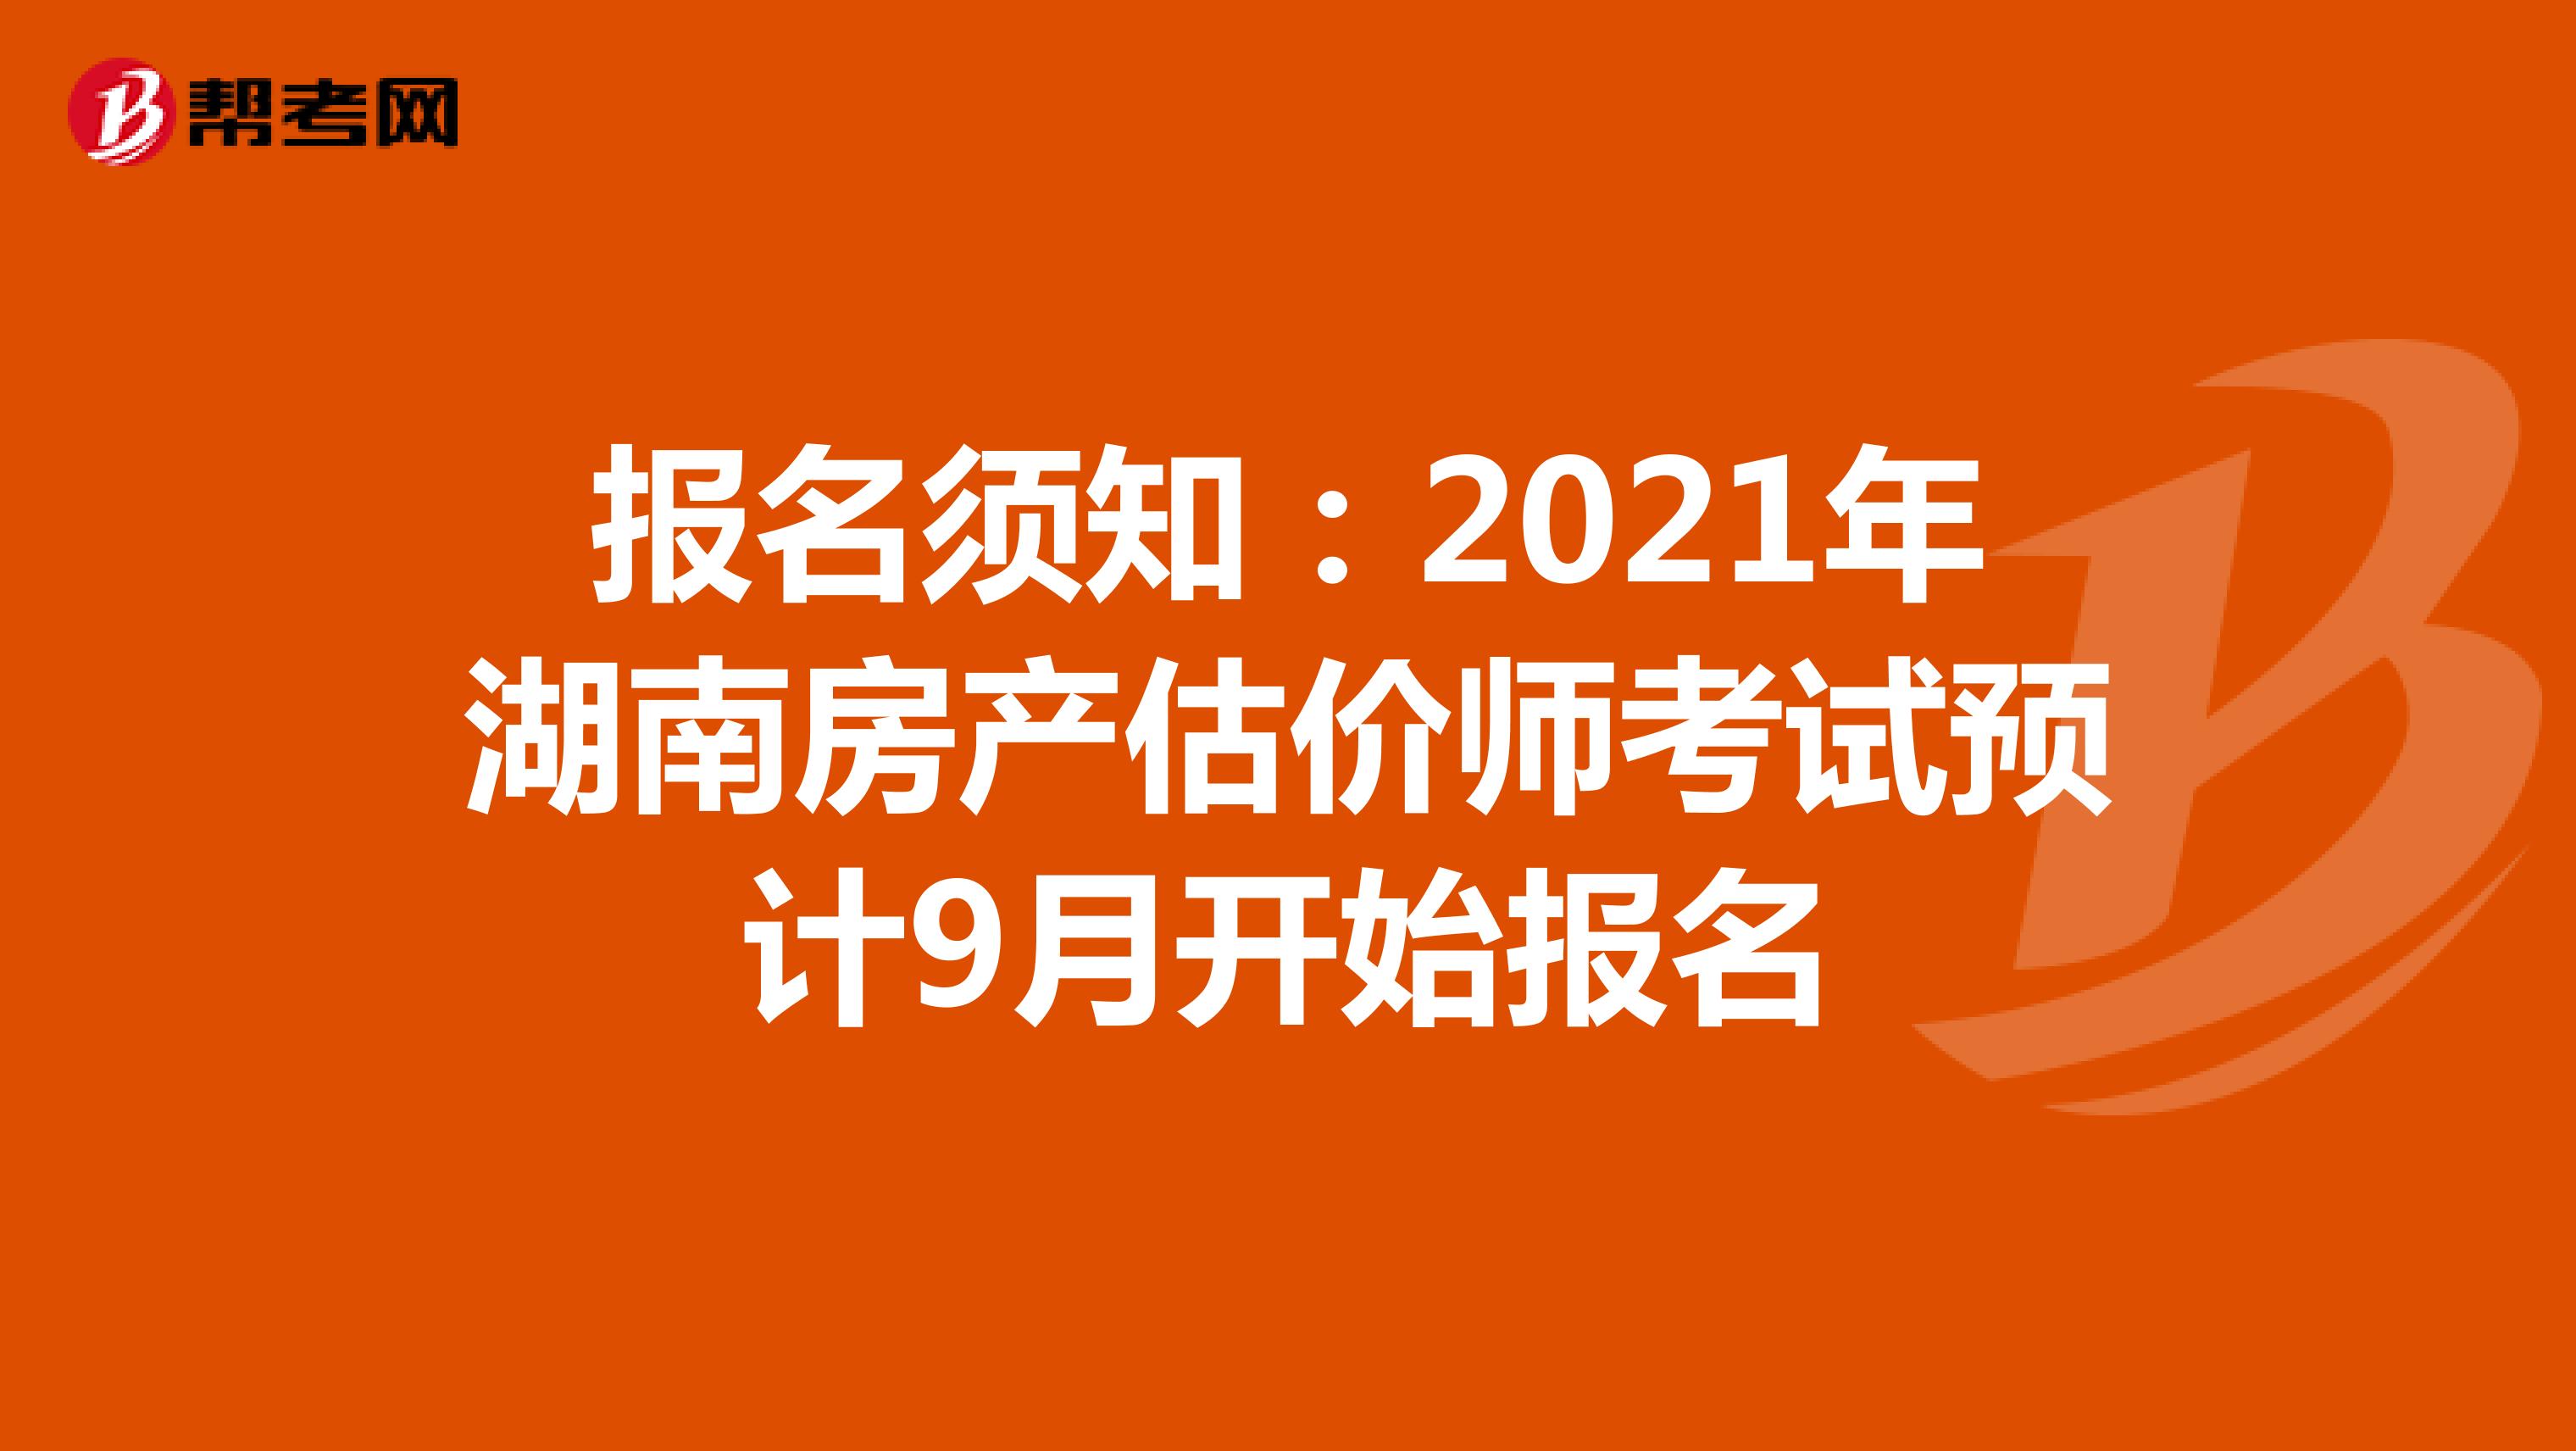 报名须知：2021年湖南房产估价师考试预计9月开始报名